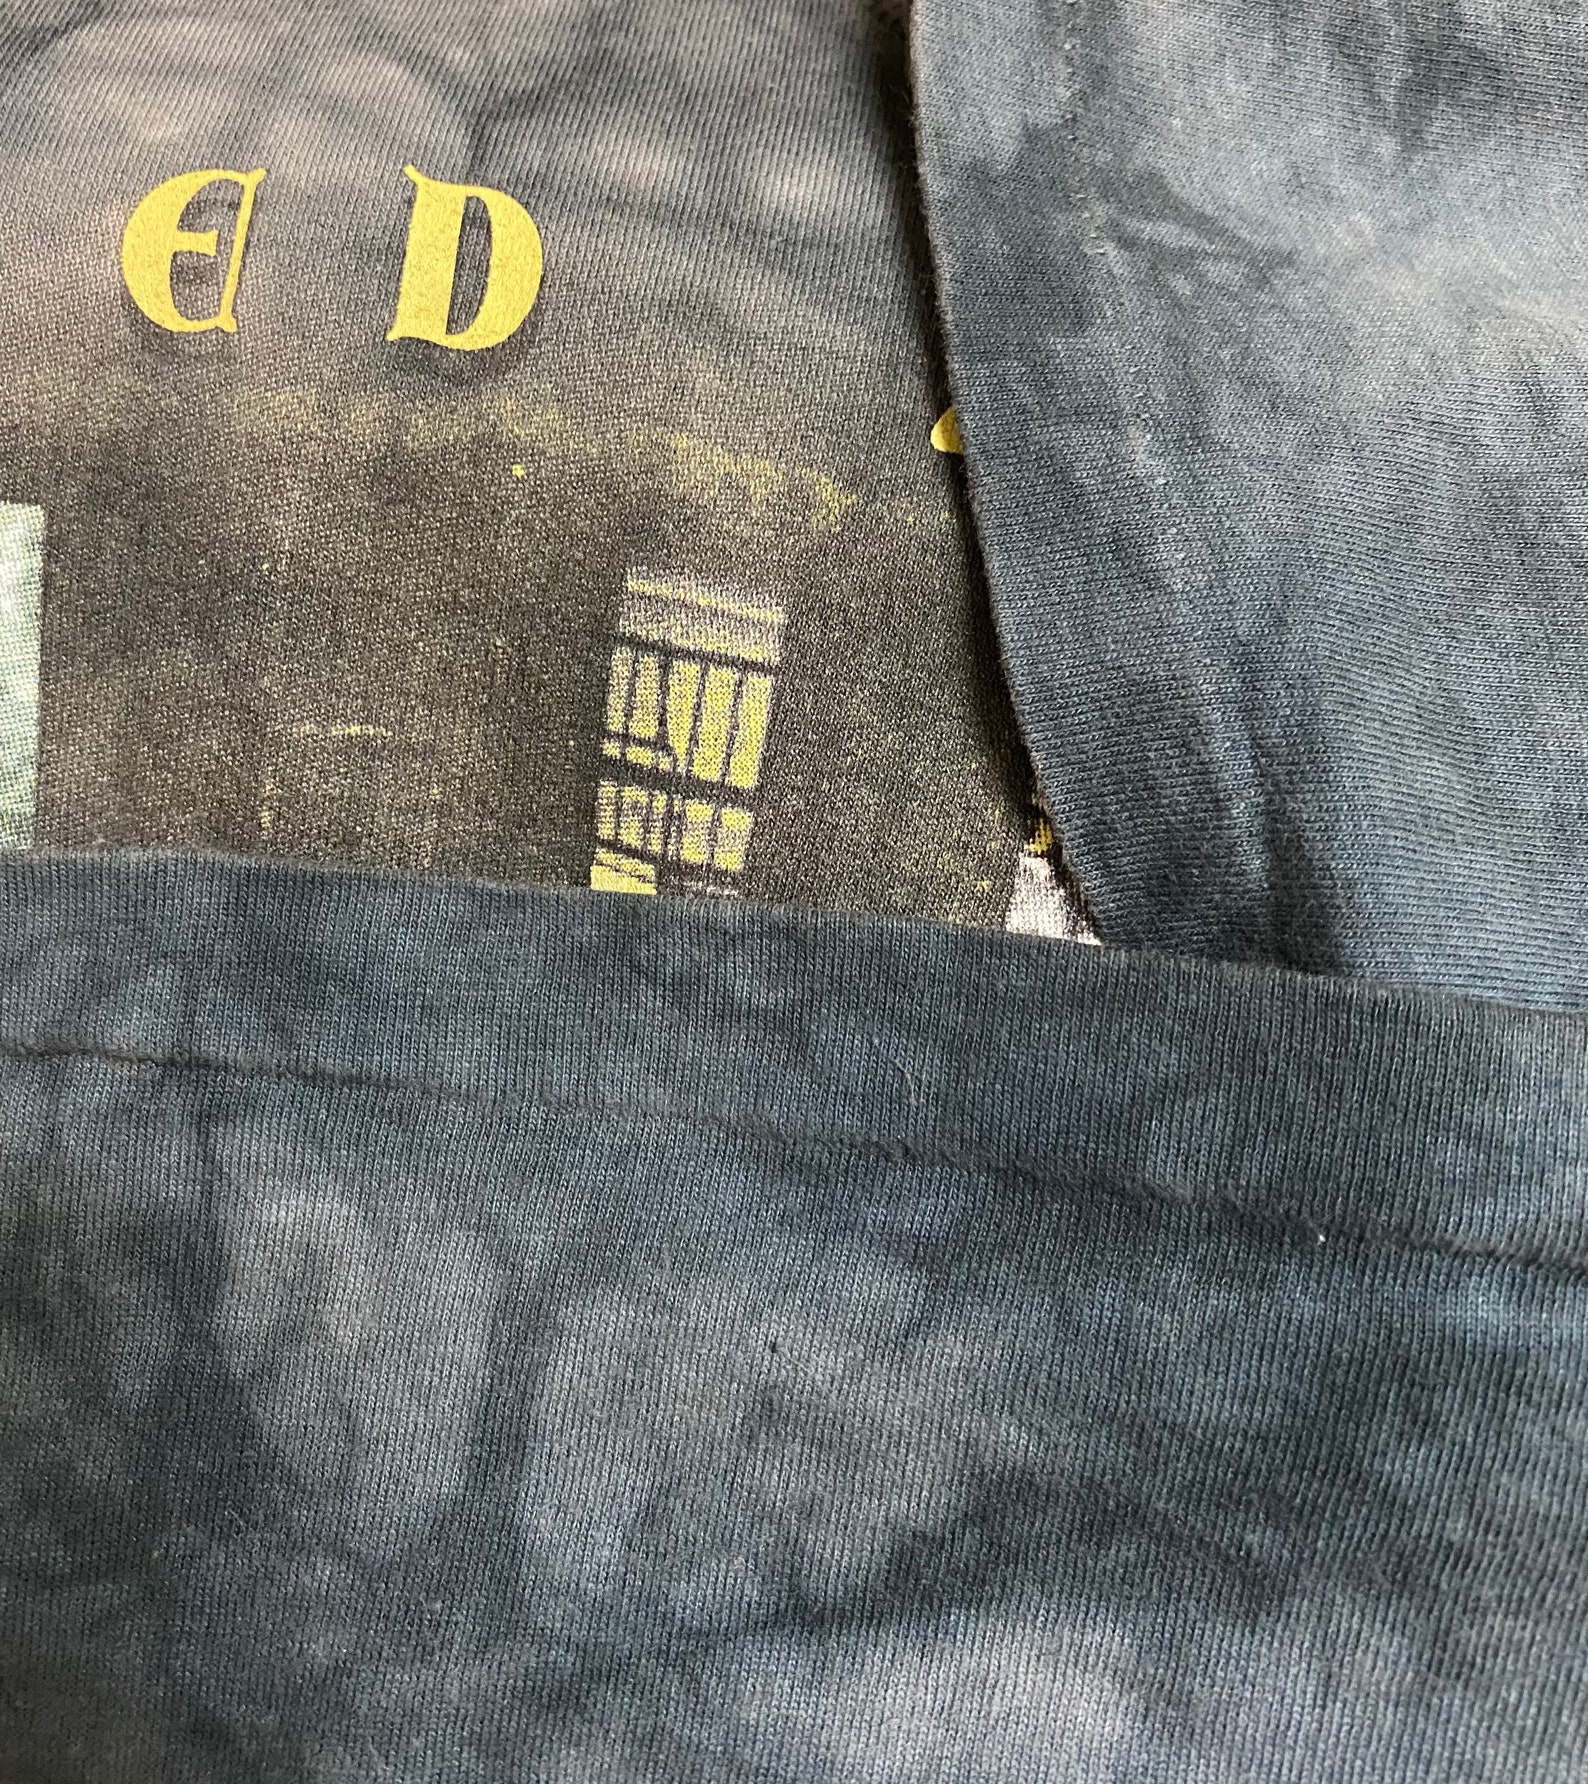 Rare Vintage Led Zeppelin Tye Dye Tee Shirt XL Size Tye Dye Colour - Etsy